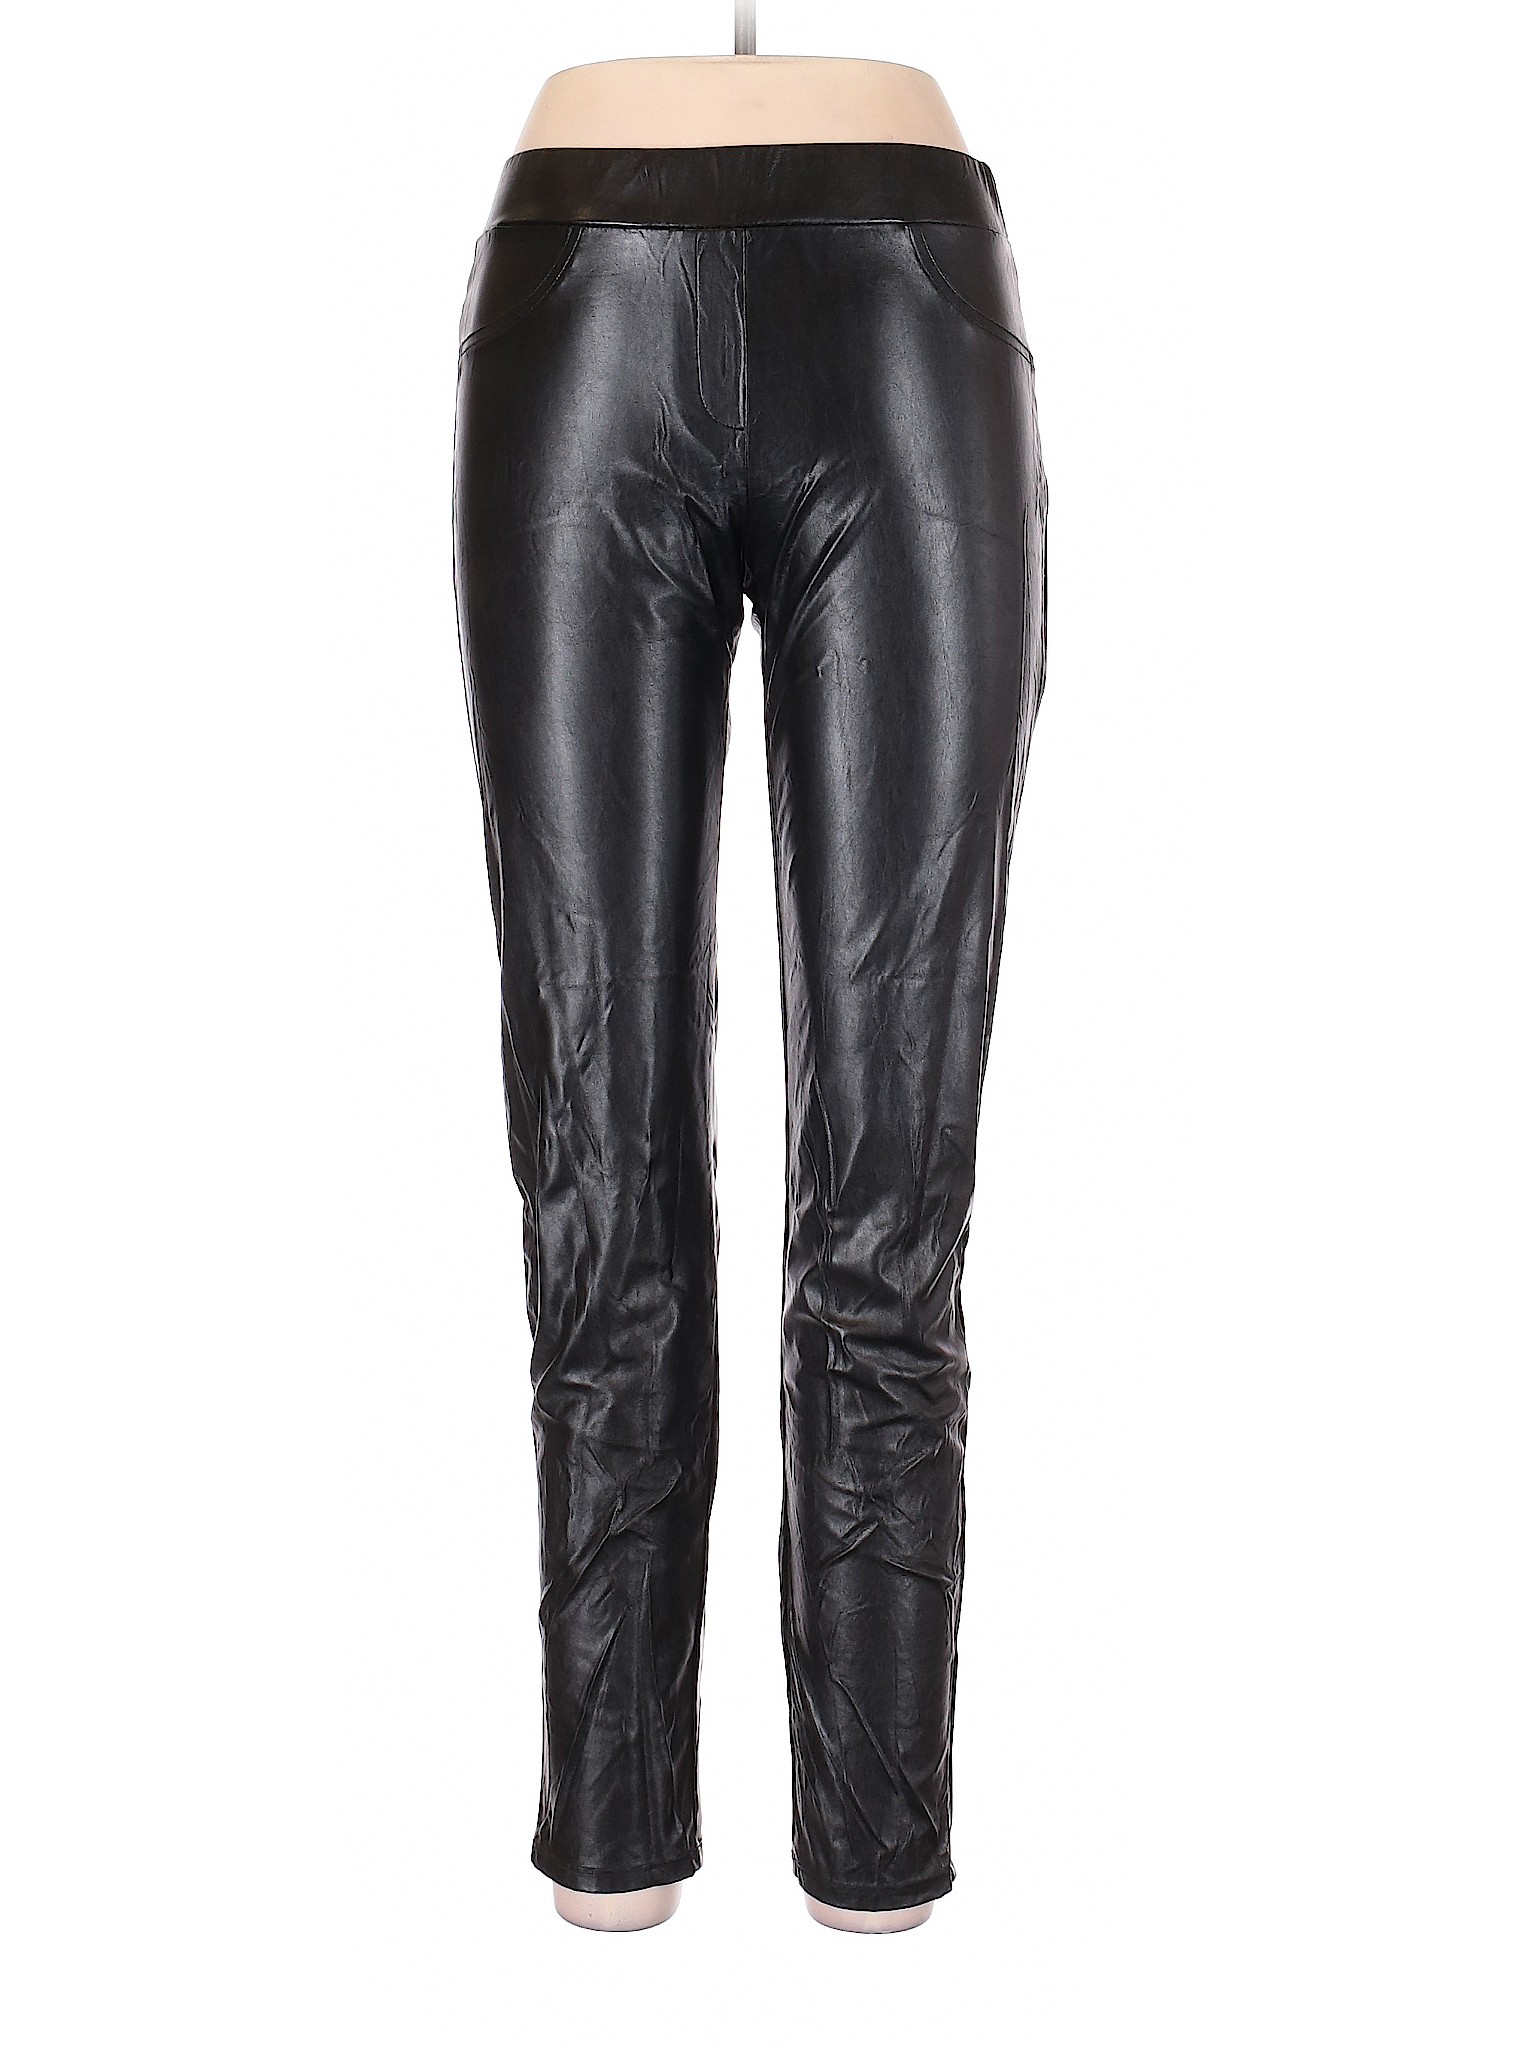 Silvergate Women Black Faux Leather Pants L | eBay